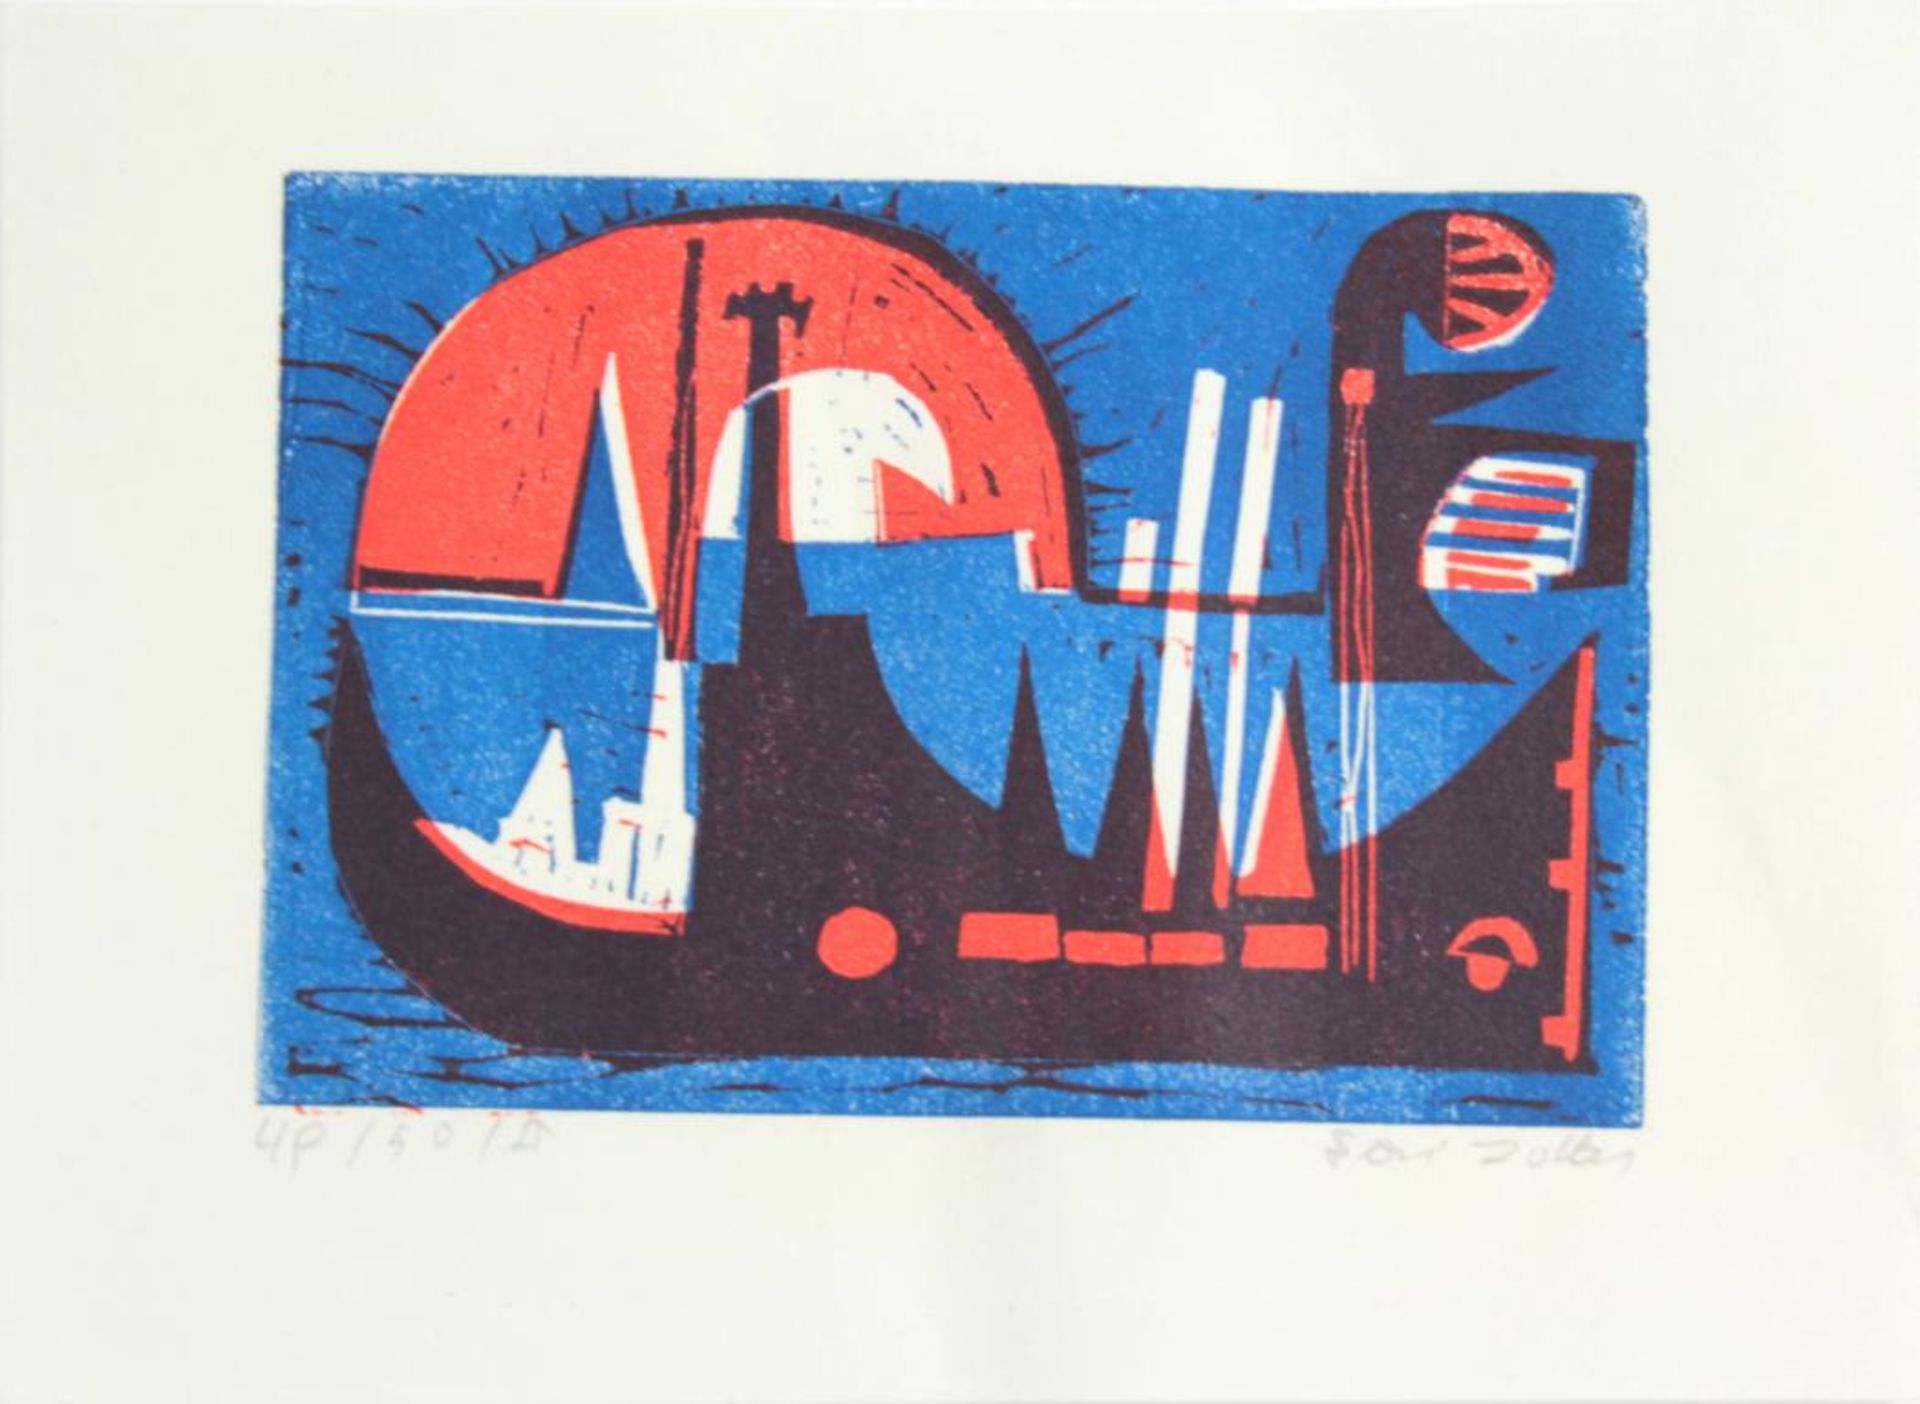  Feri Zotter(1923 - 1987)"Hafen"1966Linolschnitt auf Papier; Ed. 49/50/II; signiert, datiert, nummer